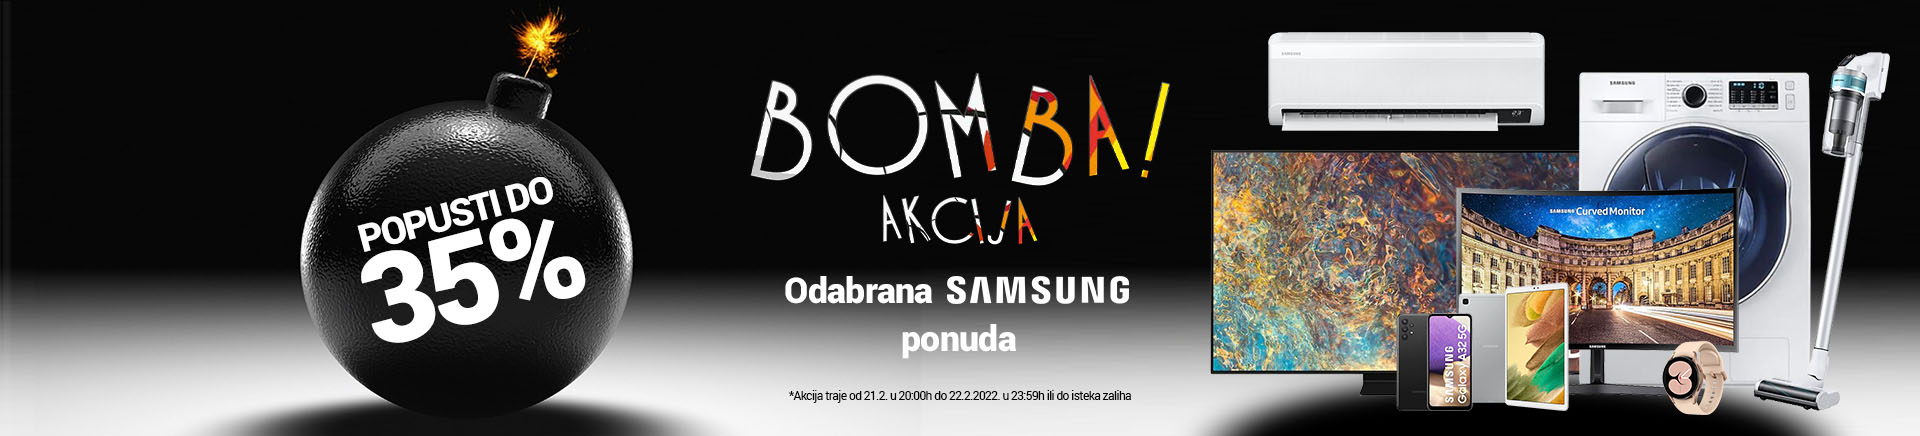 Bomba akcija - Samsung do 35% popusta